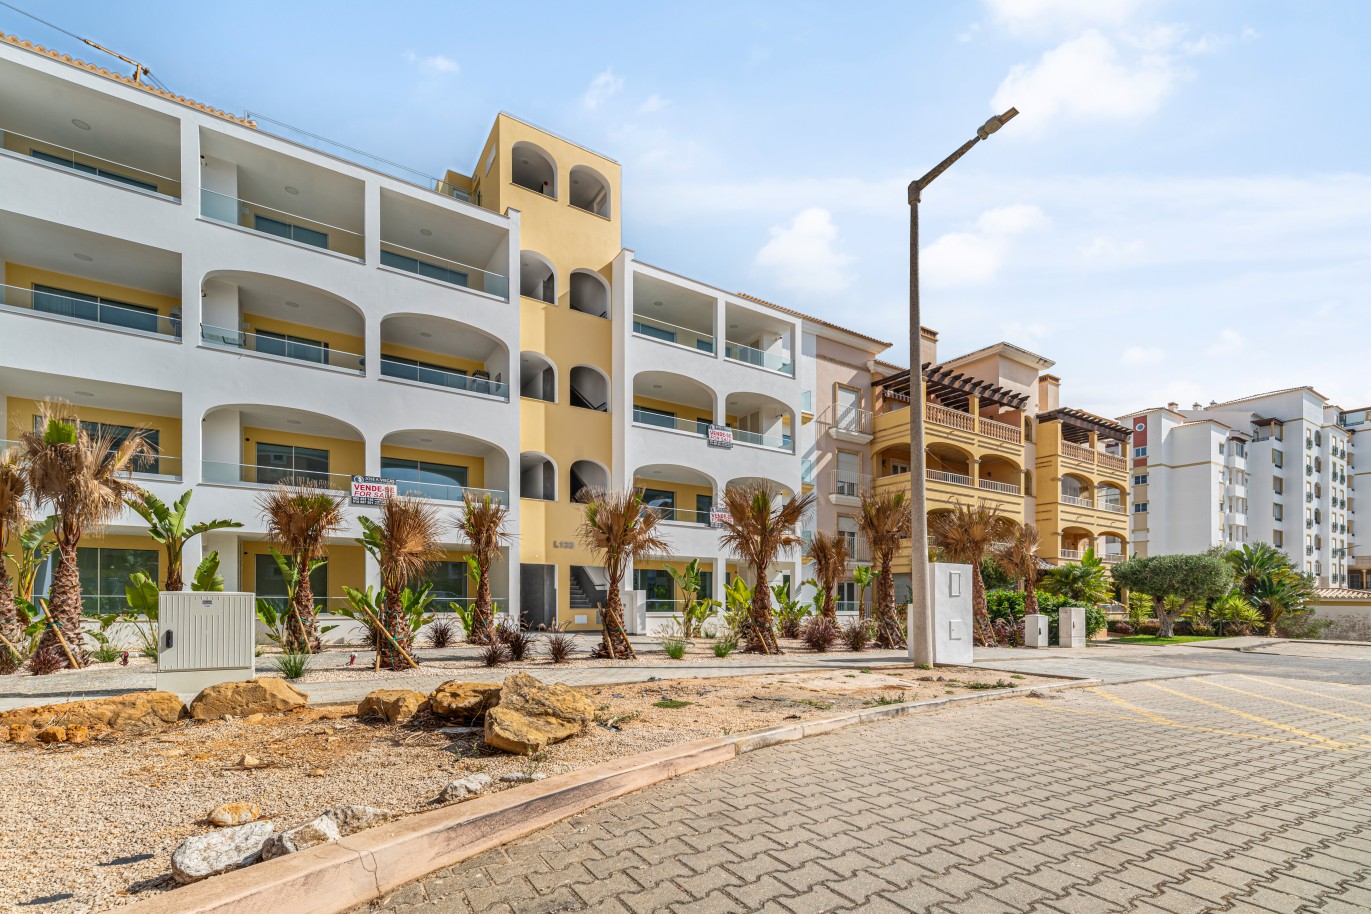 Verkauf einer Wohnung, mit Terrasse, Lagos, Algarve, Portugal_237987